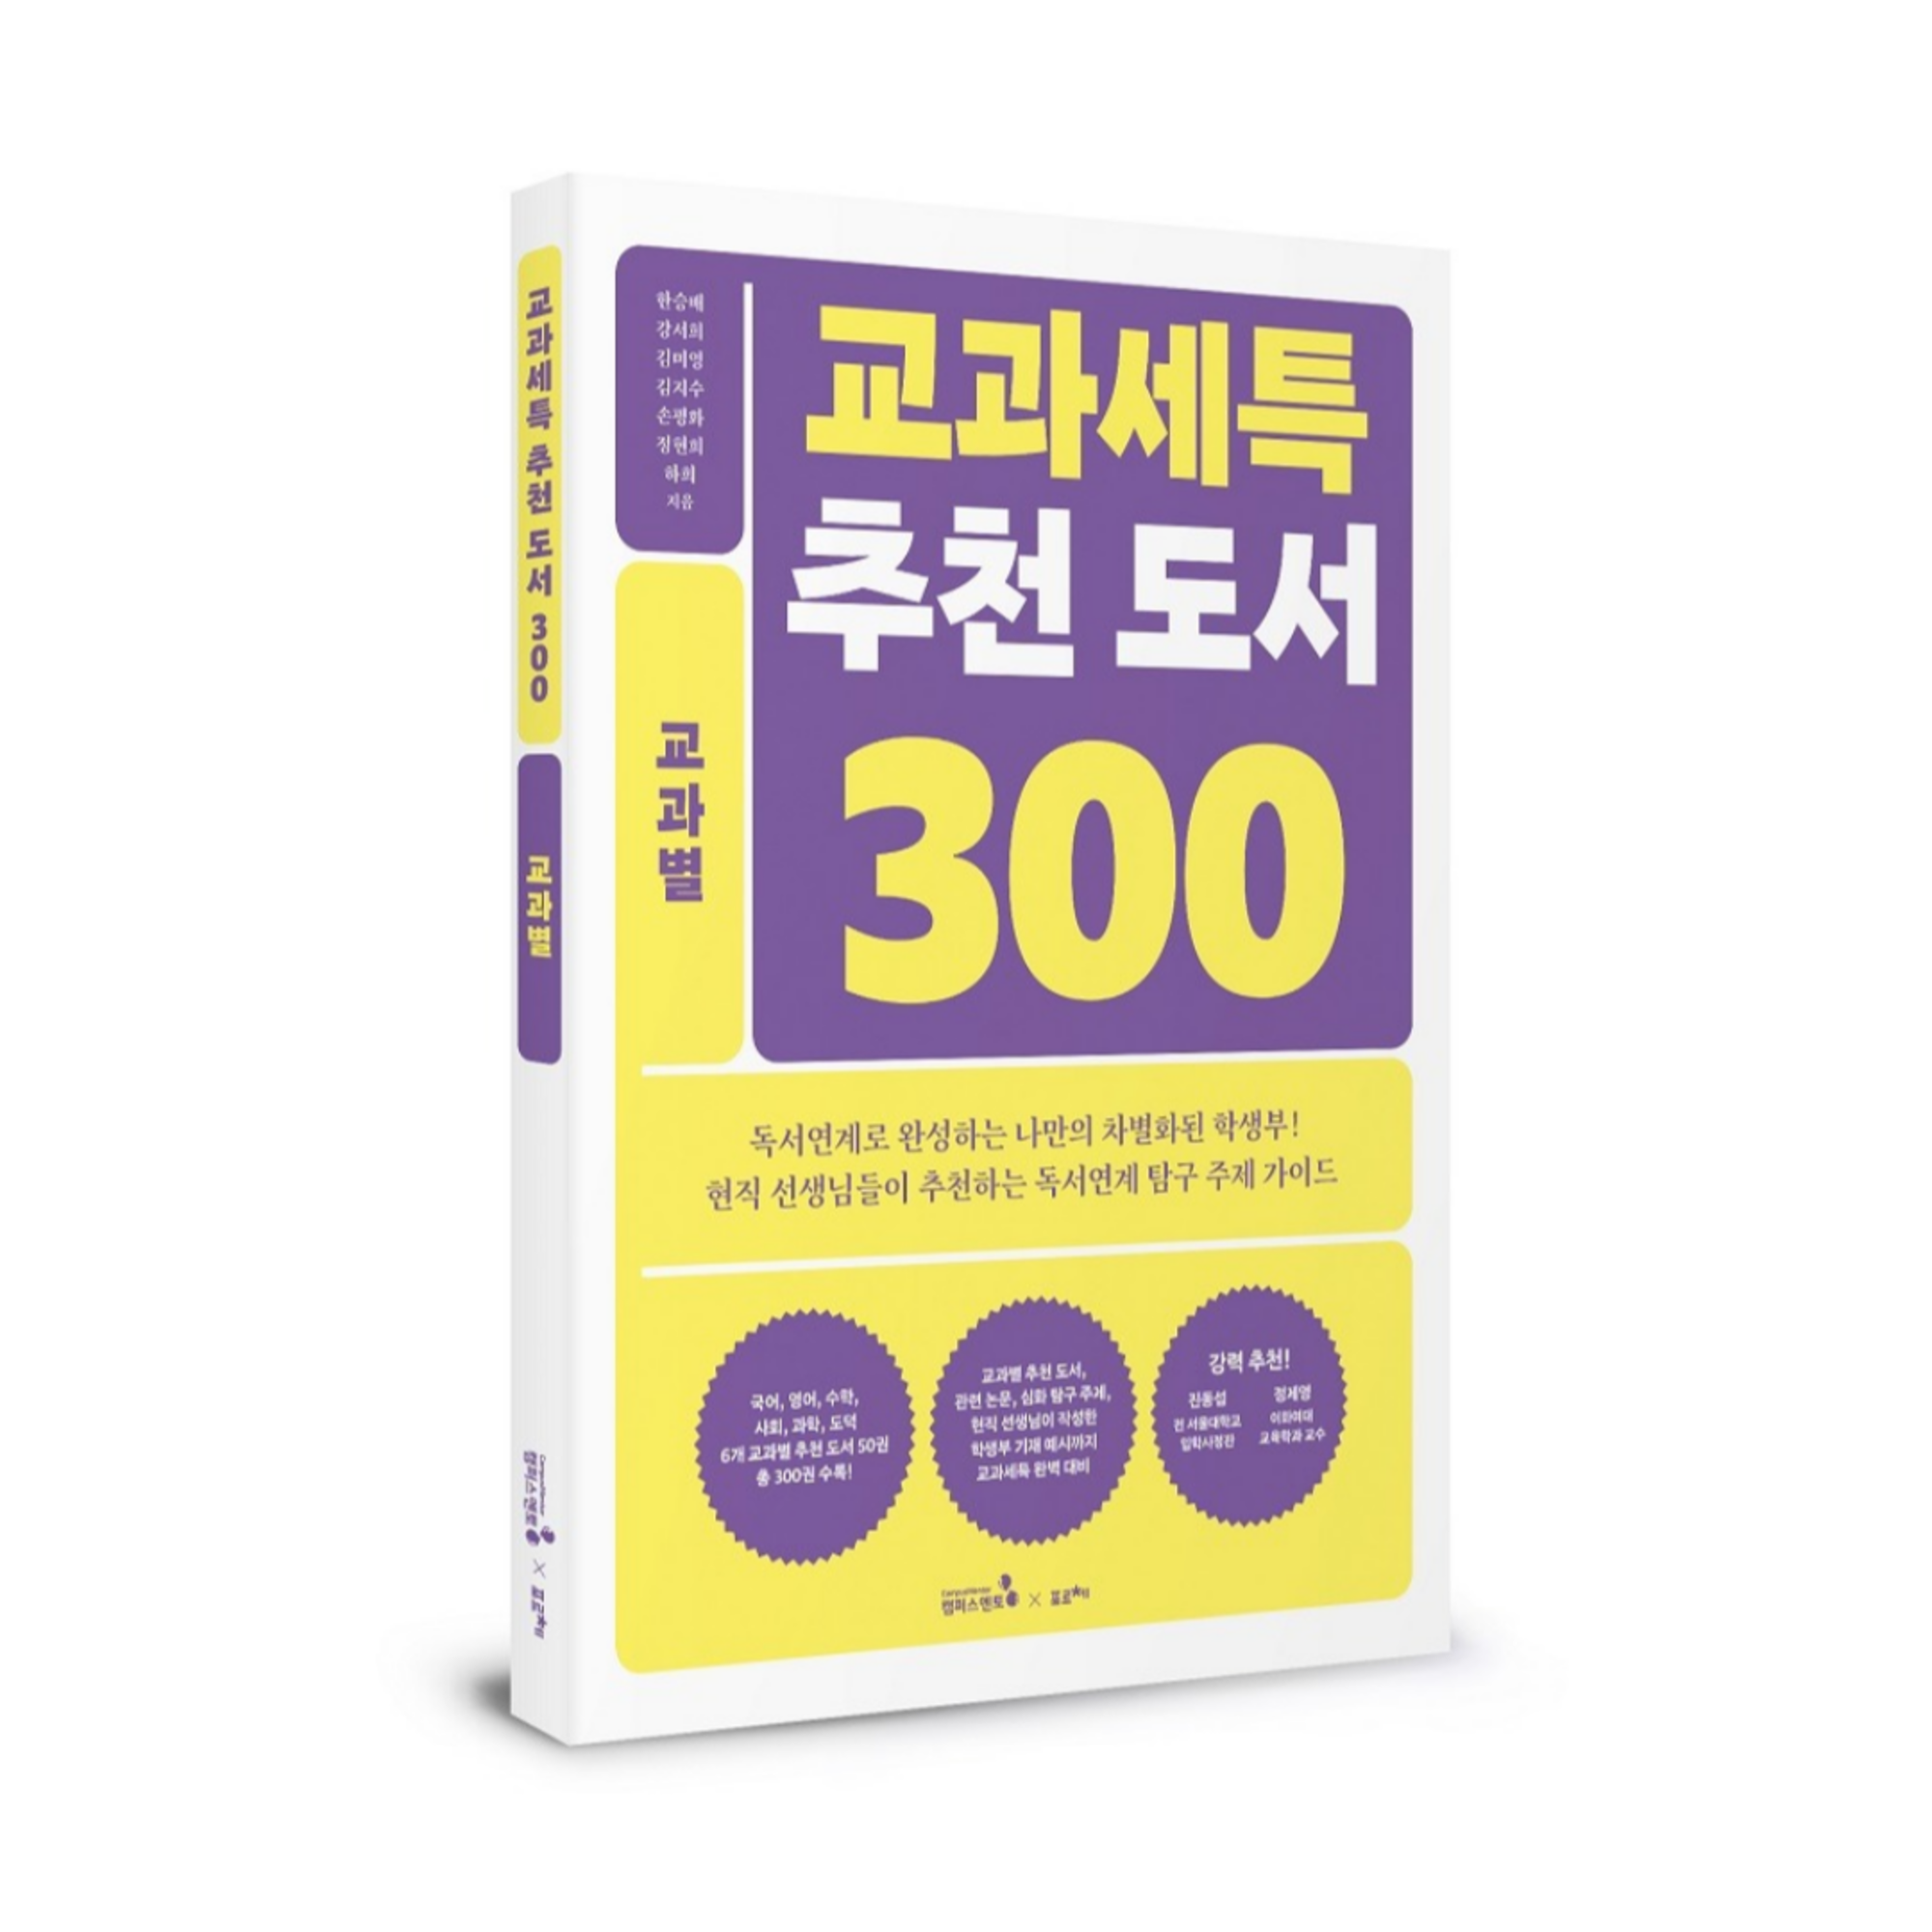 교과세특 추천 도서 300_교과별(2권)